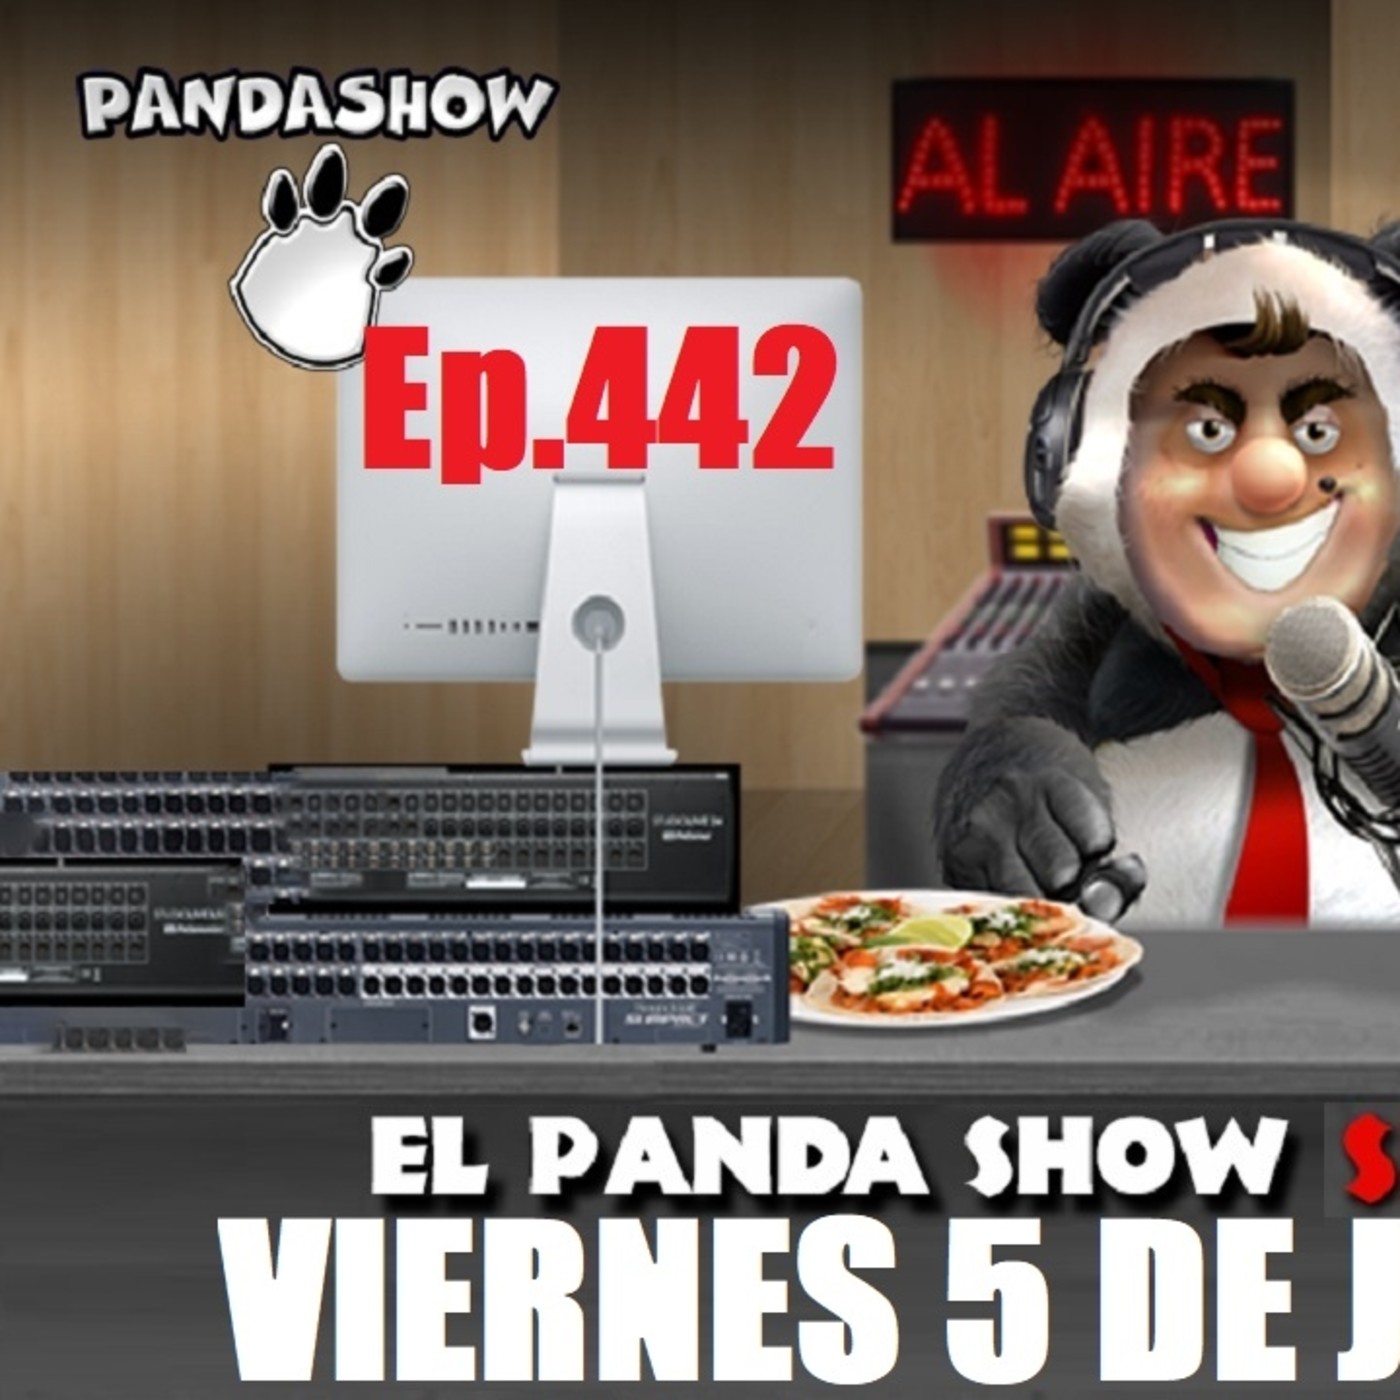 EL PANDA SHOW Ep. 442 VIERNES 5 DE JUNIO 2020